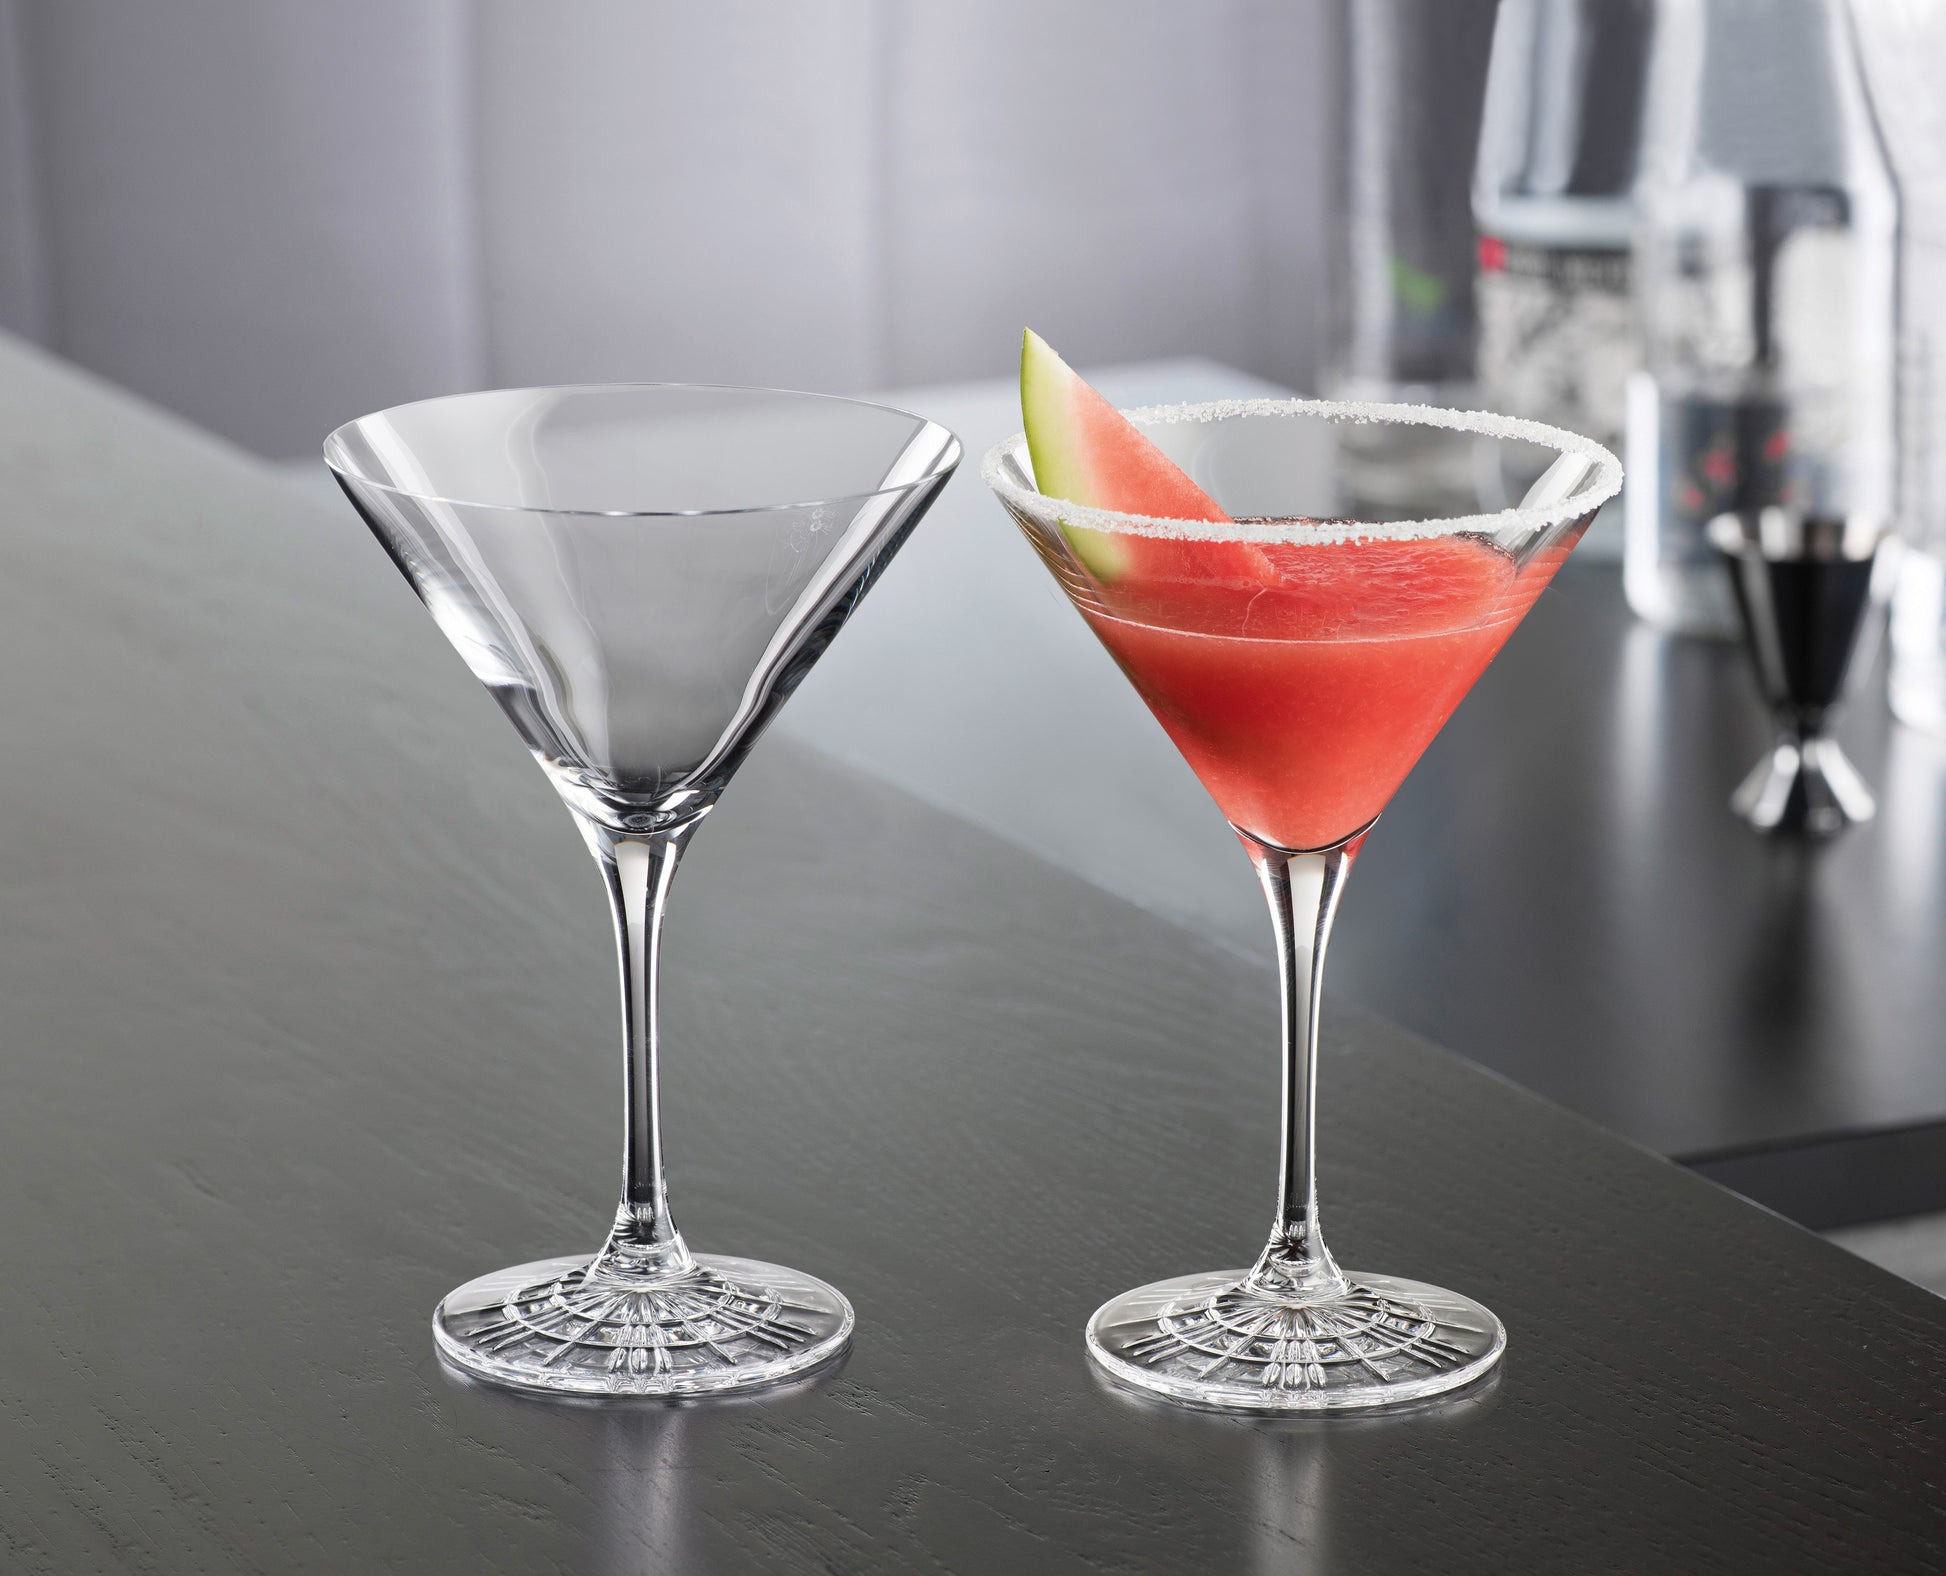 Set di 4 coppe Martini Cocktail in vetro cristallino lavorato. Dimensioni: mm 103 x 140 h - Capacità: 165 ml Lavabile in lavastoviglie. In negozio e online su tuttochic.it